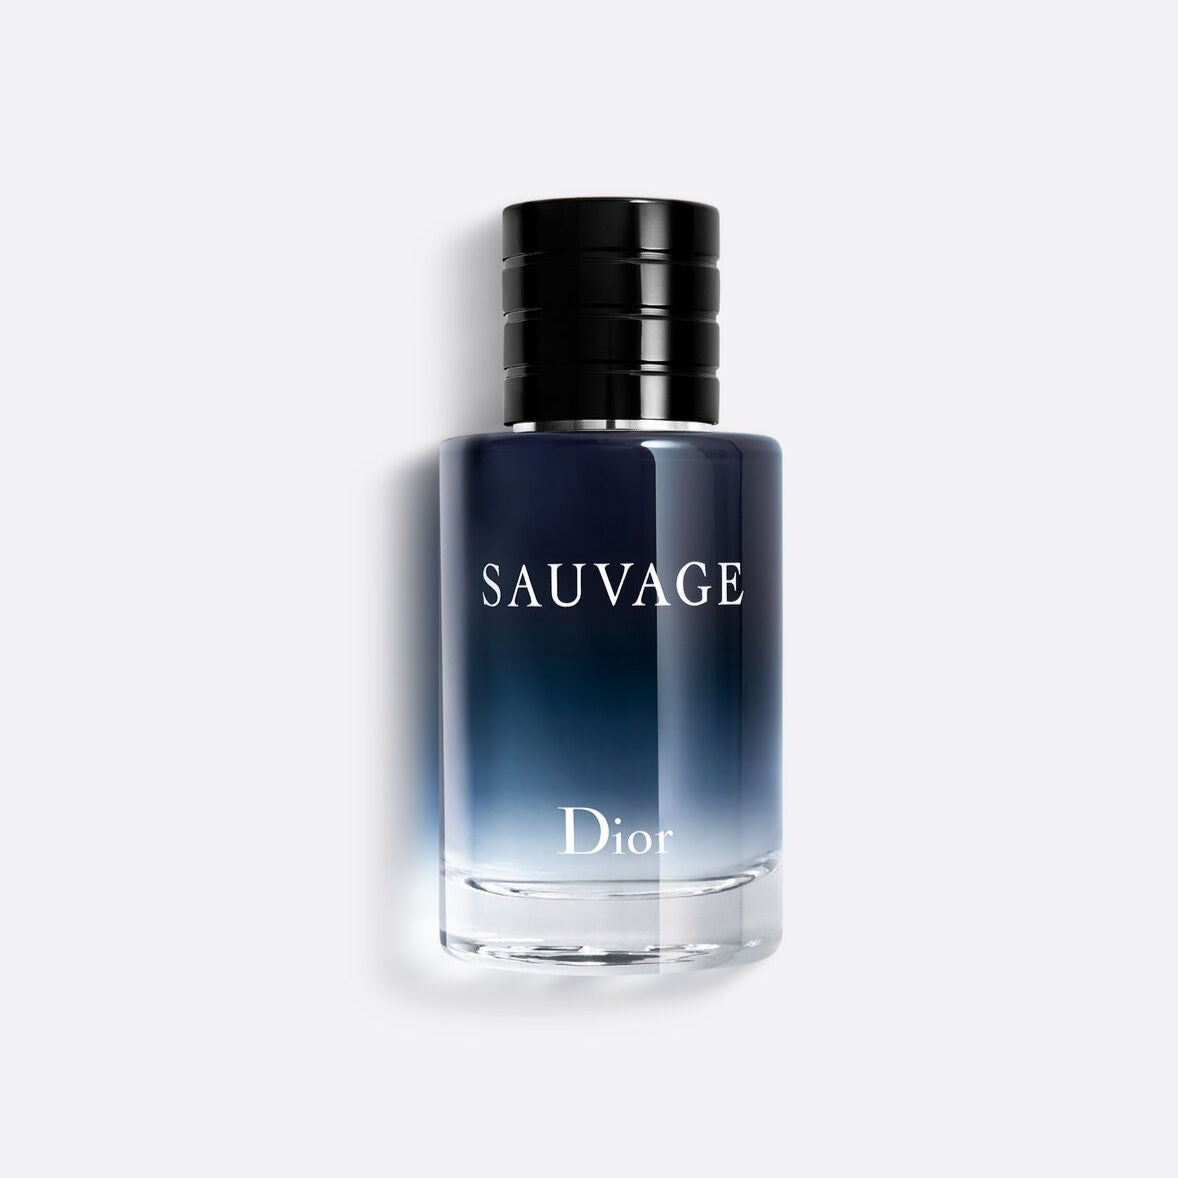 Dior - Sauvage - Eau de Toilette - 2oz